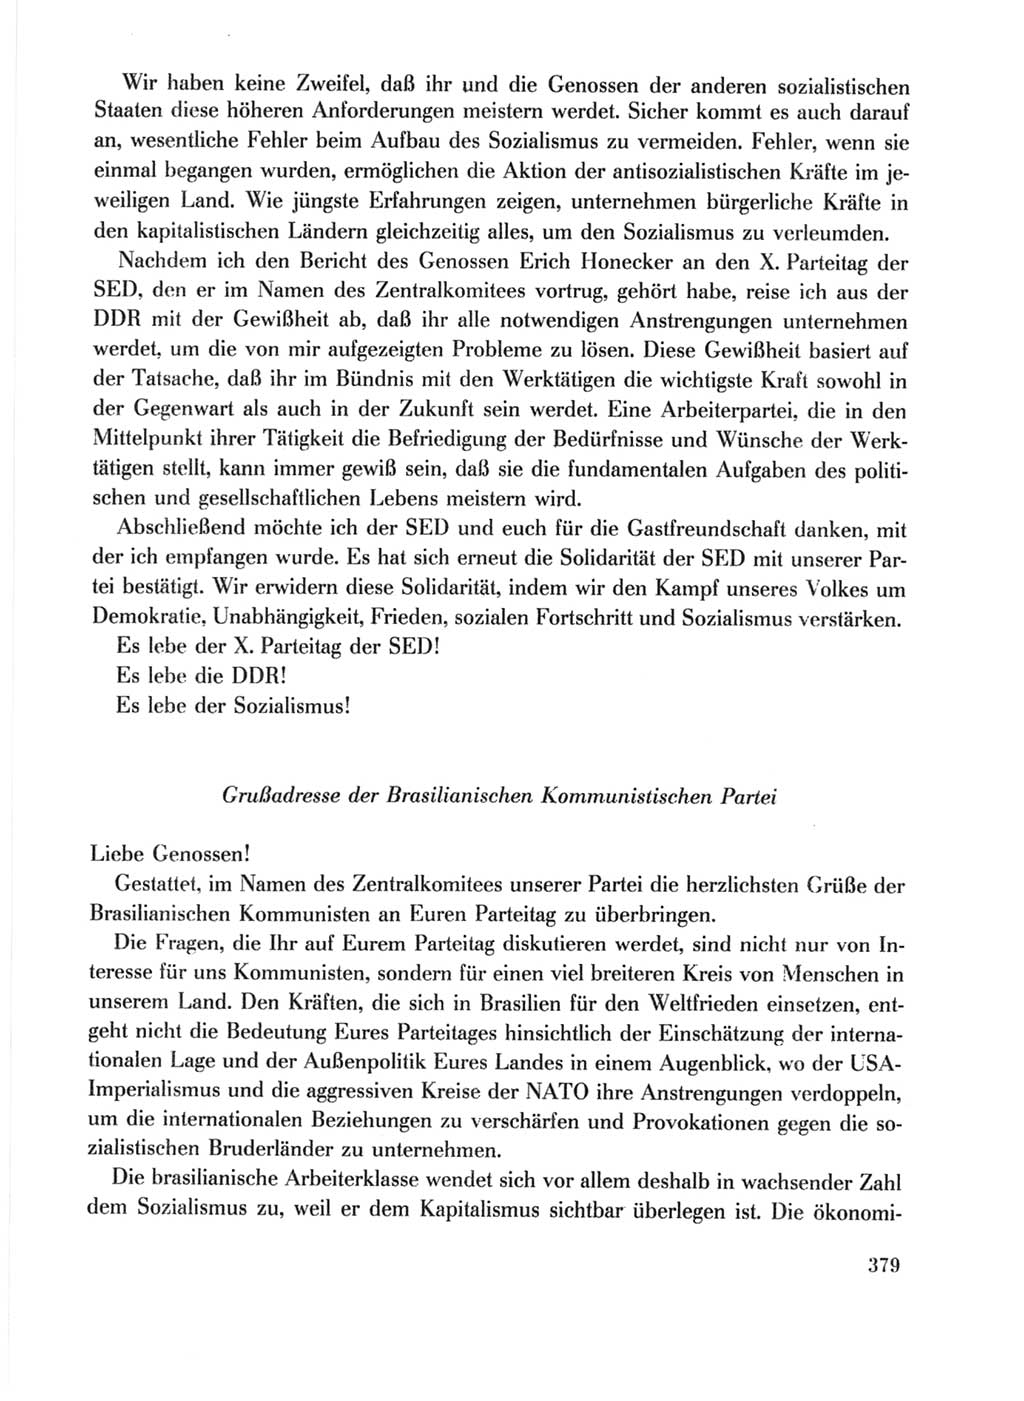 Protokoll der Verhandlungen des Ⅹ. Parteitages der Sozialistischen Einheitspartei Deutschlands (SED) [Deutsche Demokratische Republik (DDR)] 1981, Band 1, Seite 379 (Prot. Verh. Ⅹ. PT SED DDR 1981, Bd. 1, S. 379)